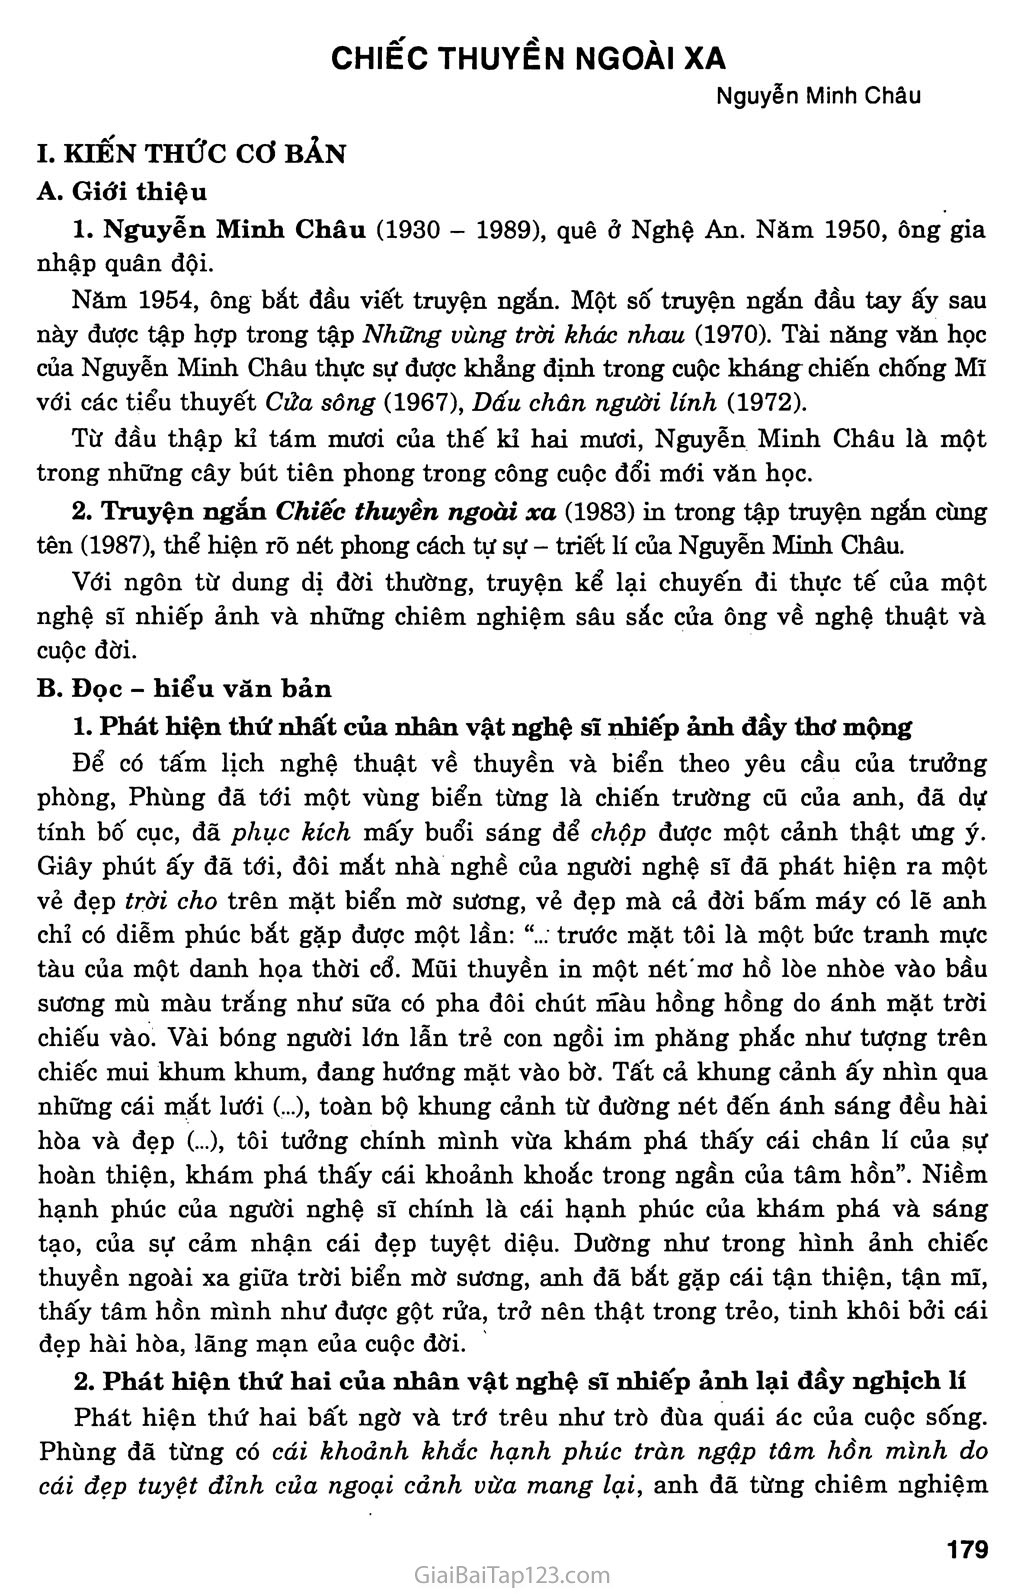 Chiếc thuyền ngoài xa (Nguyễn Minh Châu, 1983) trang 1